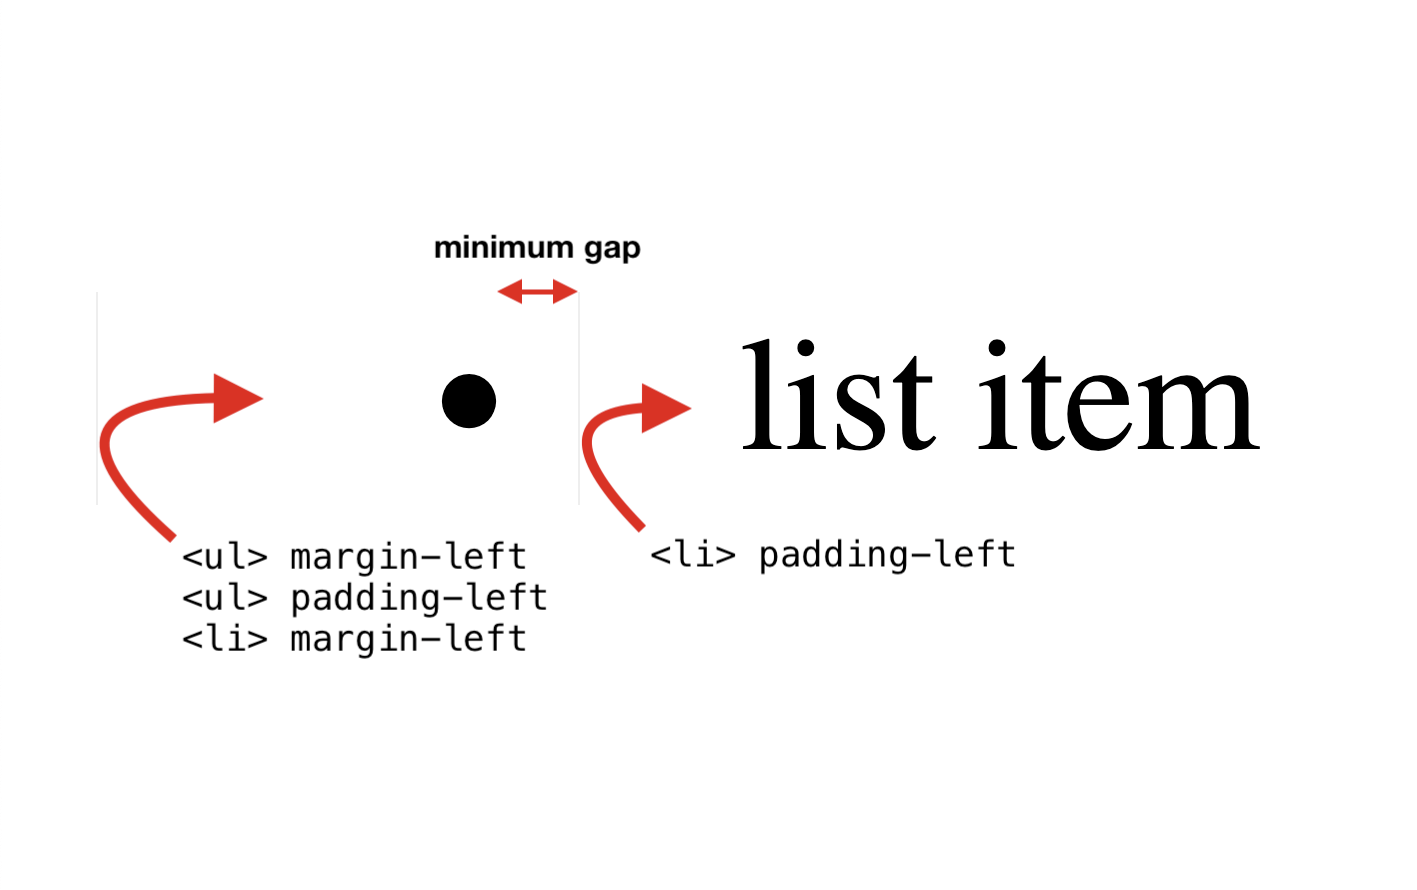 أول ثلاث خصائص: UL margin-left و UL padding-left و LI margin-left. الخاصية الرابعة: LI padding-left.